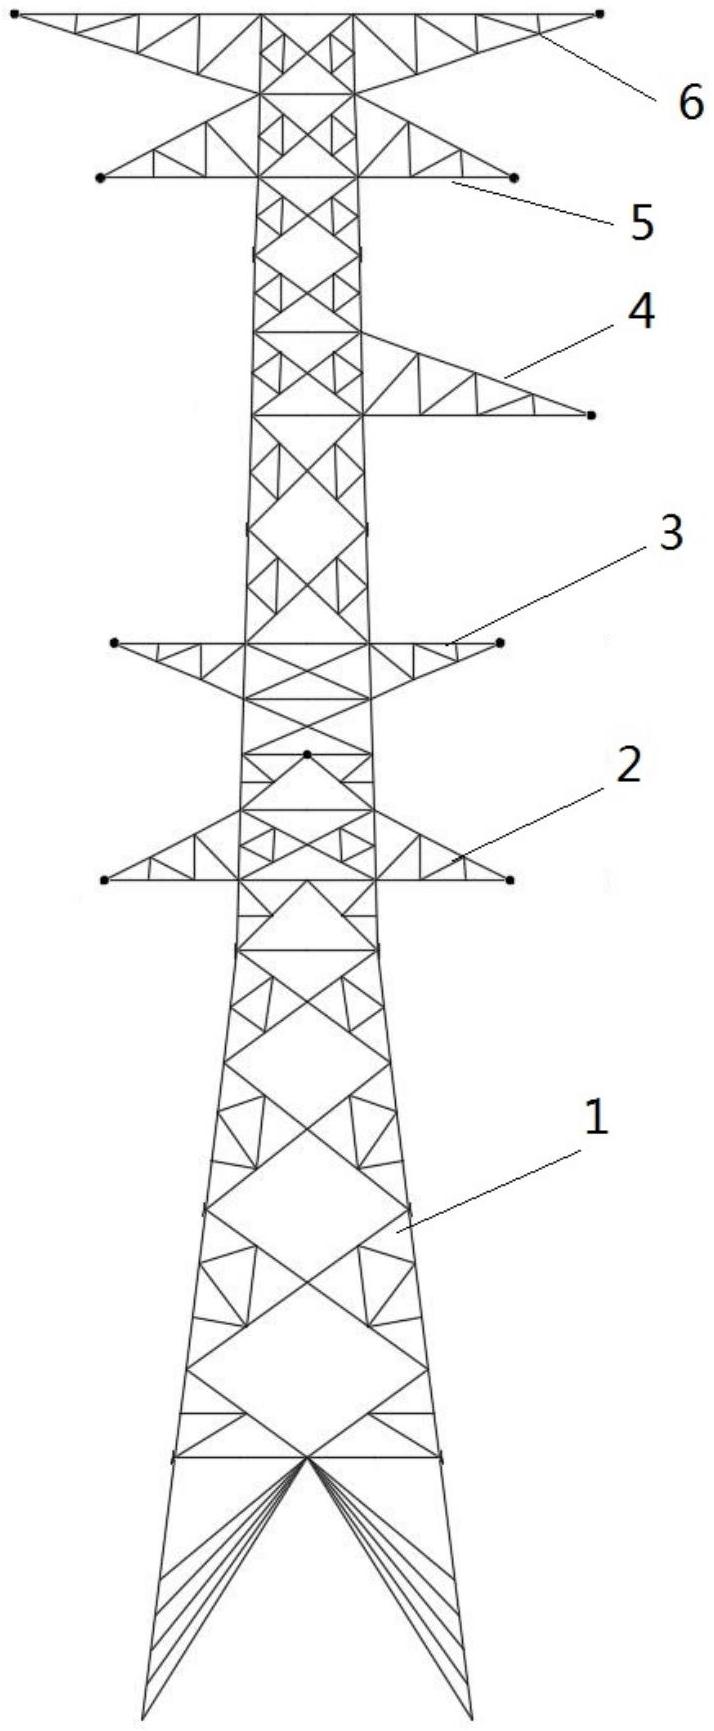 电力铁塔 示意图图片